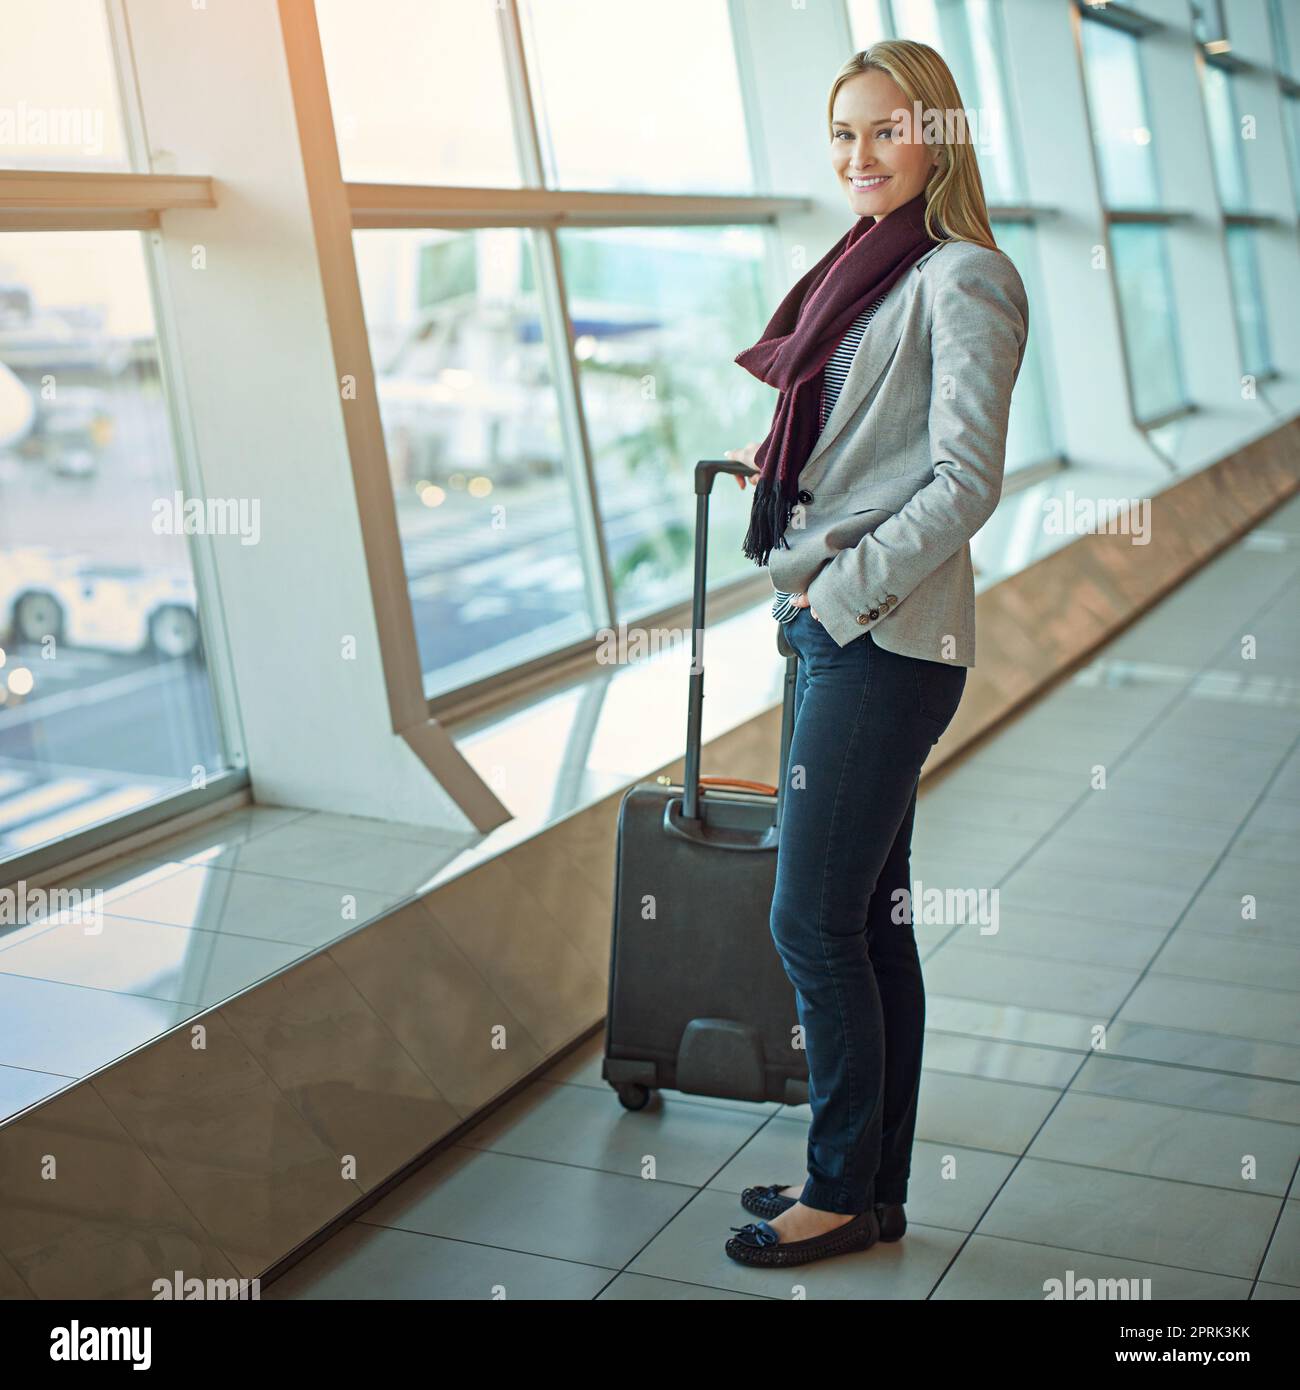 Fliegen wir. Porträt einer jungen Frau, die mit ihrem Gepäck auf einem Flughafen steht. Stockfoto